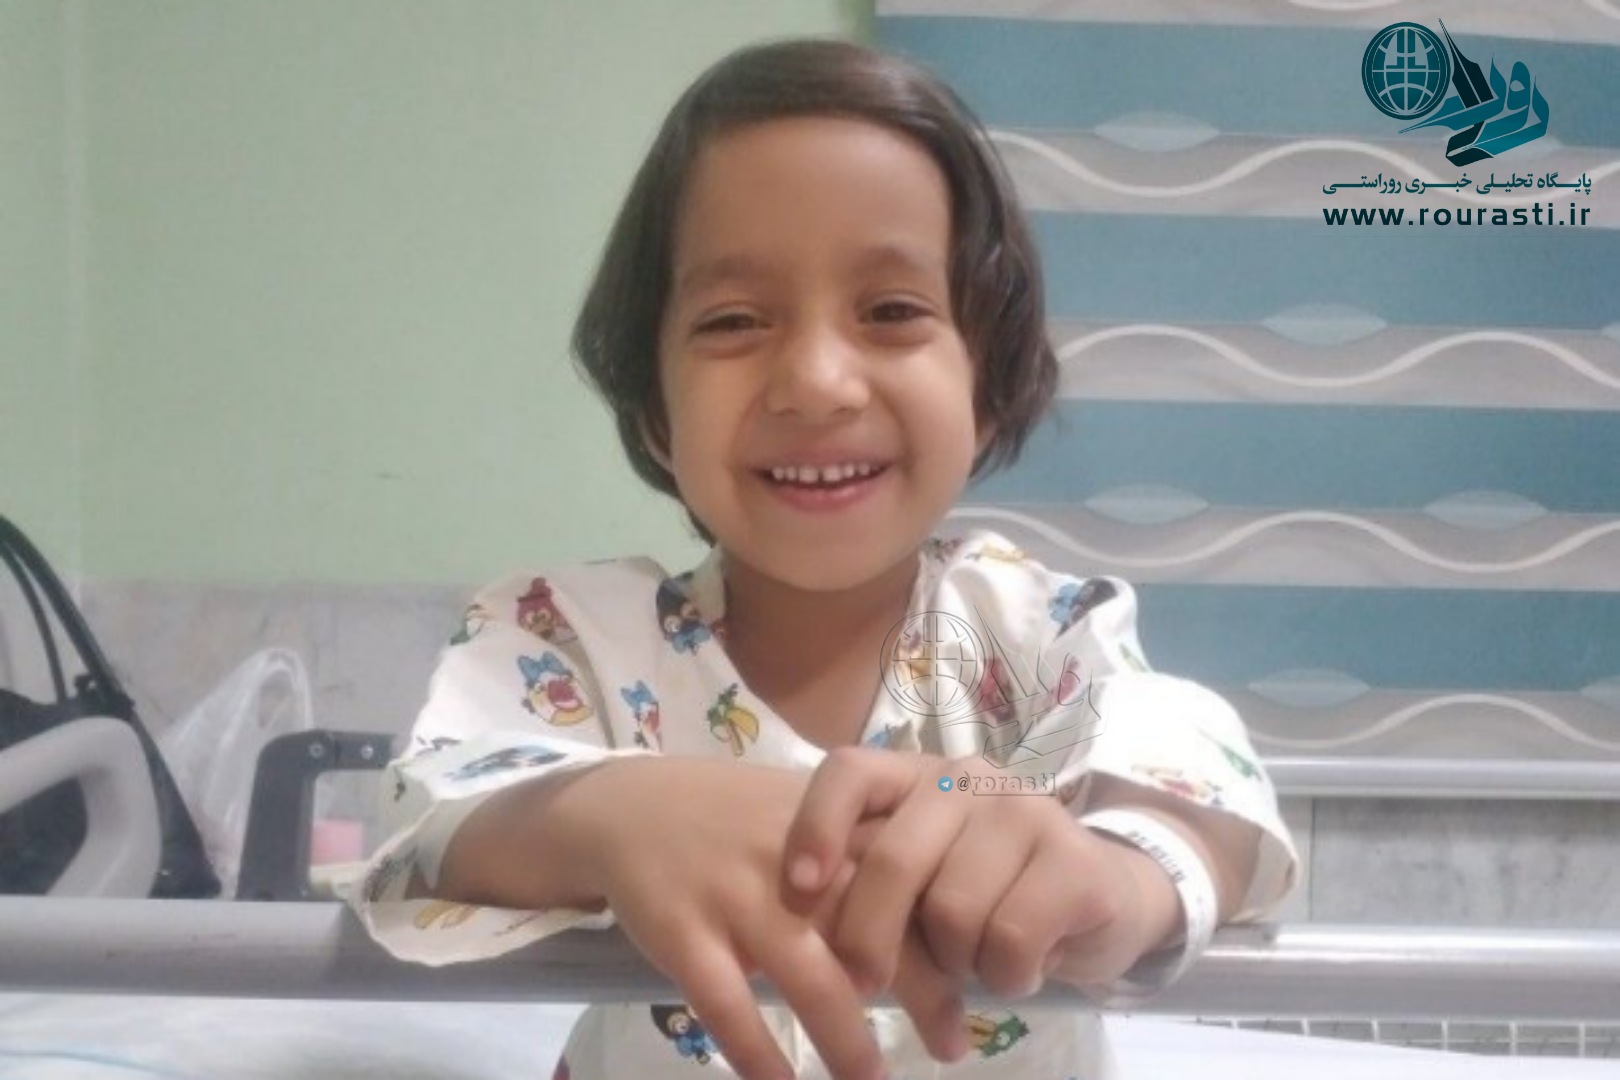 اطلاعیه سوم دانشگاه علوم پزشکی رفسنجان در خصوص علت مرگ کودک ۴ونیم ساله رفسنجانی